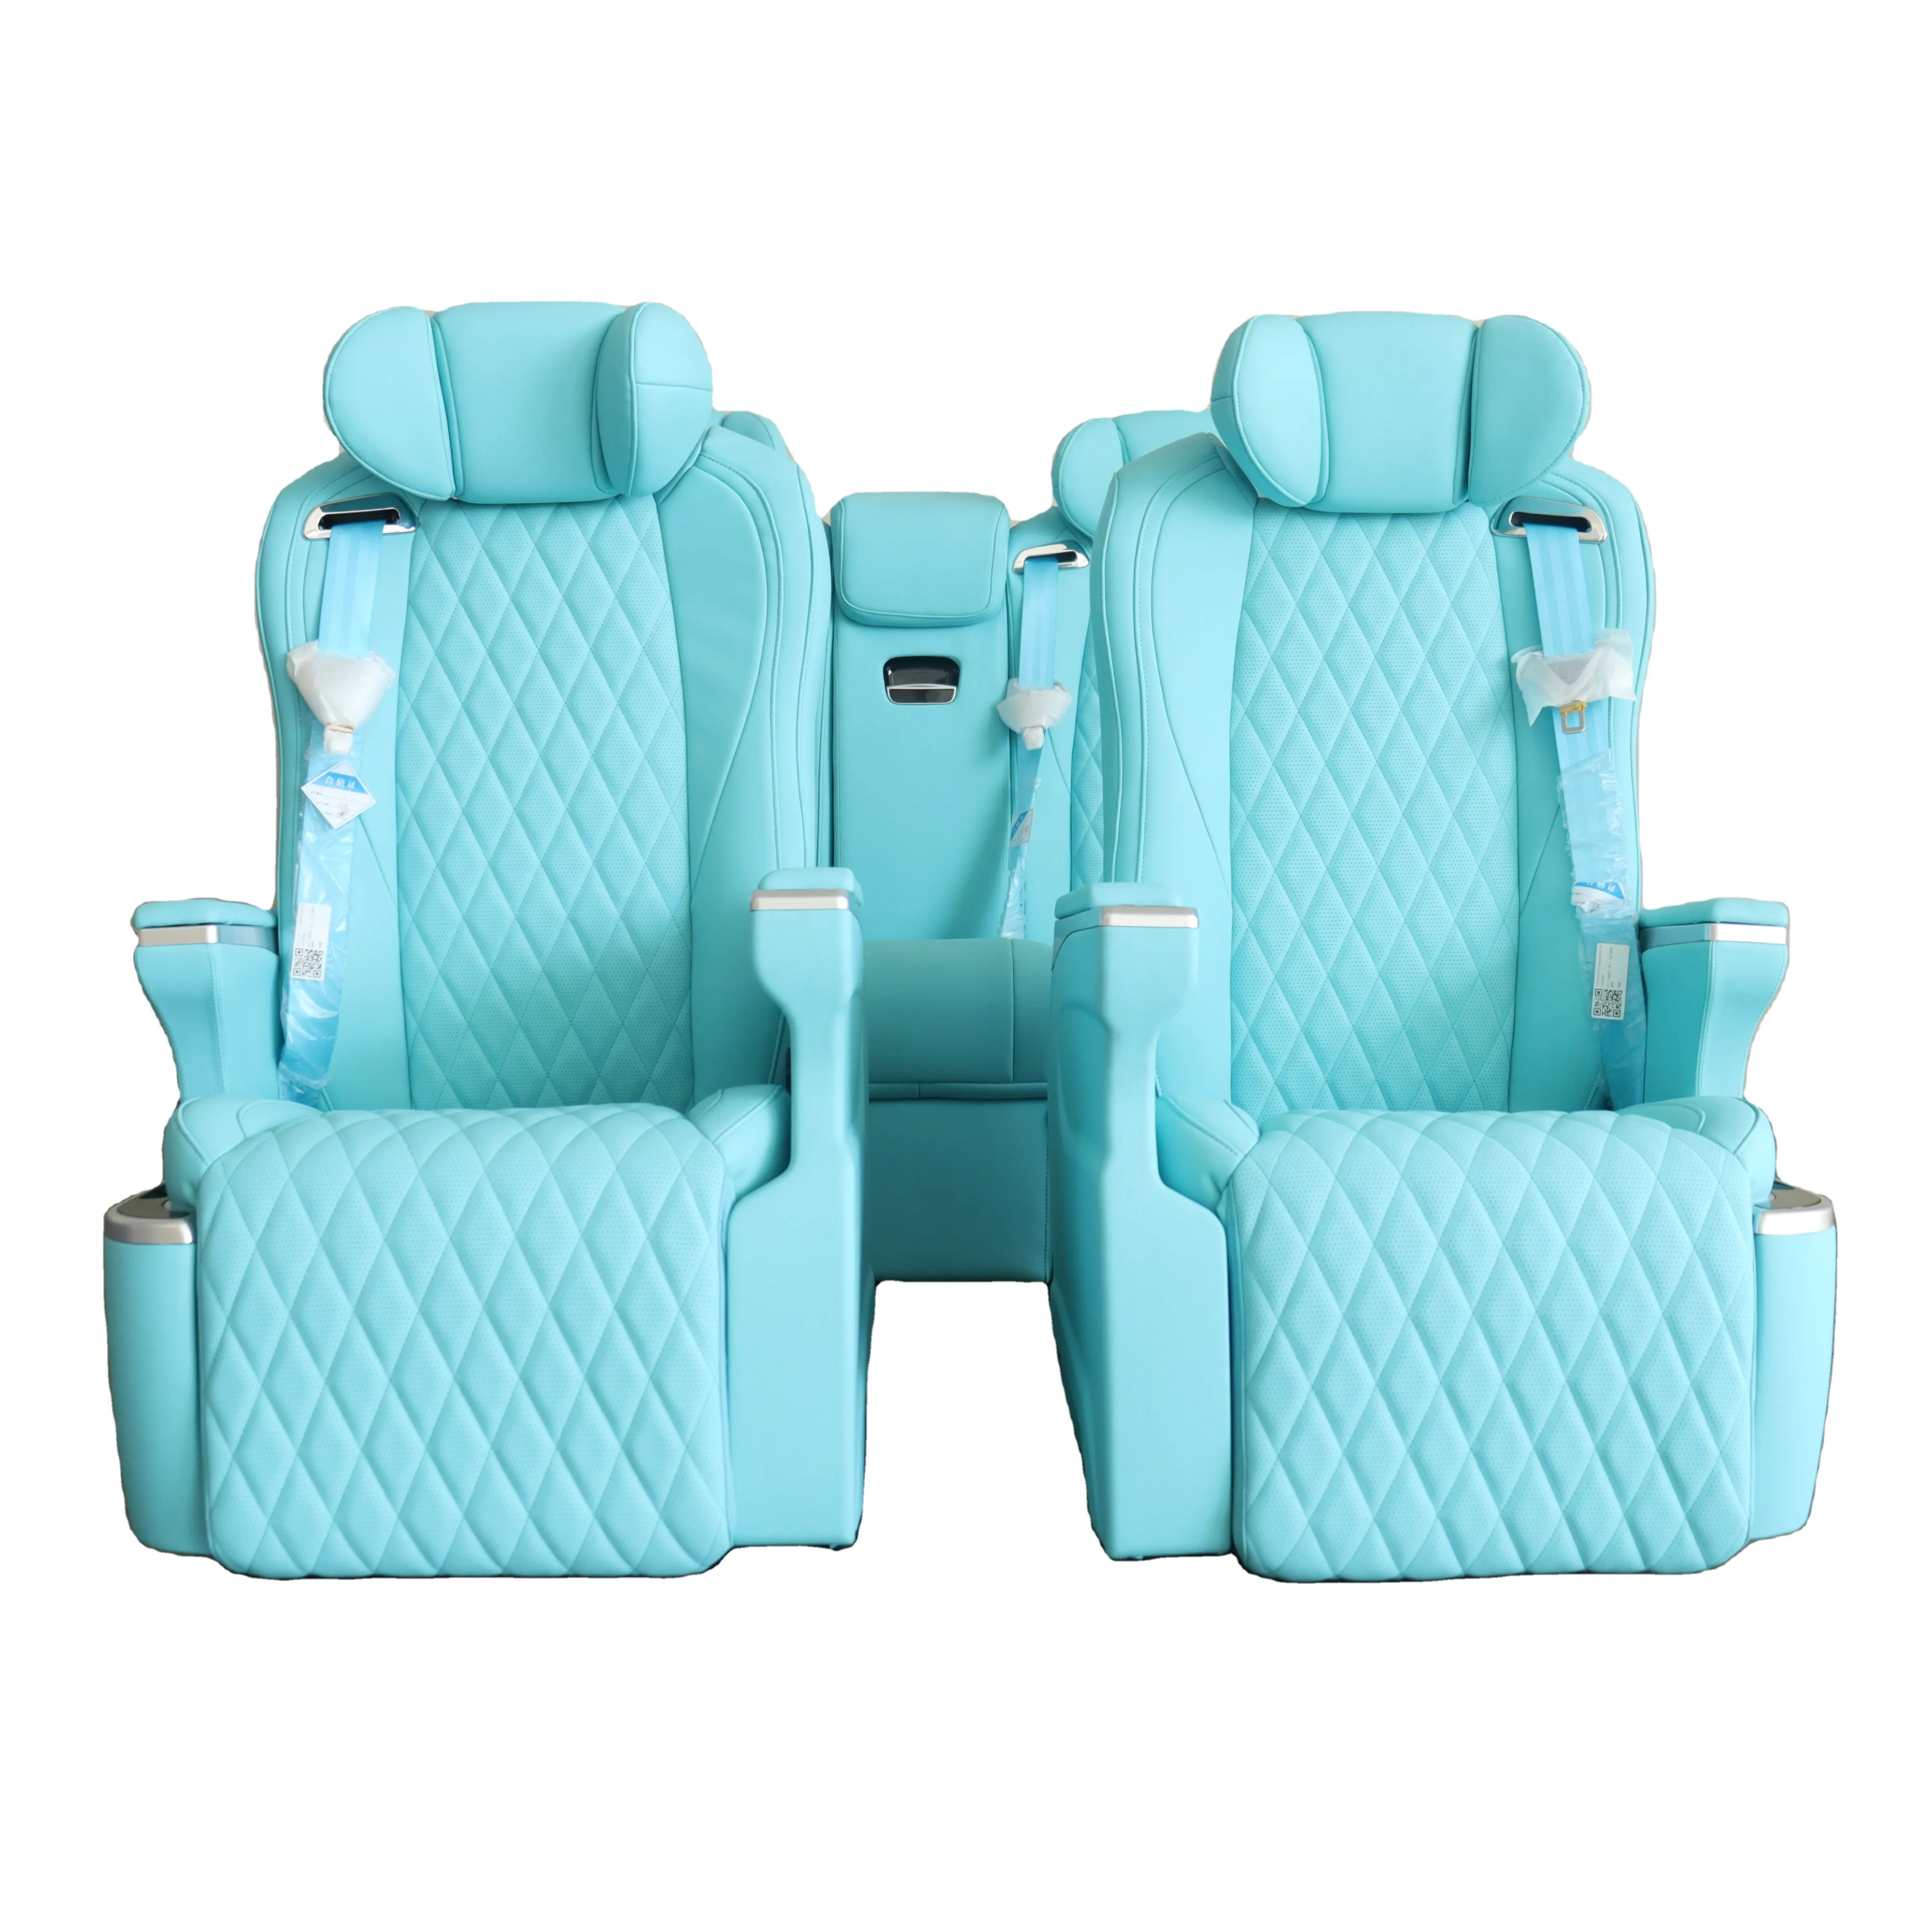 Assento reclinável para carros de luxo, assento elétrico VIP em couro para Toyota Benz Vito Alphard, com interior personalizado